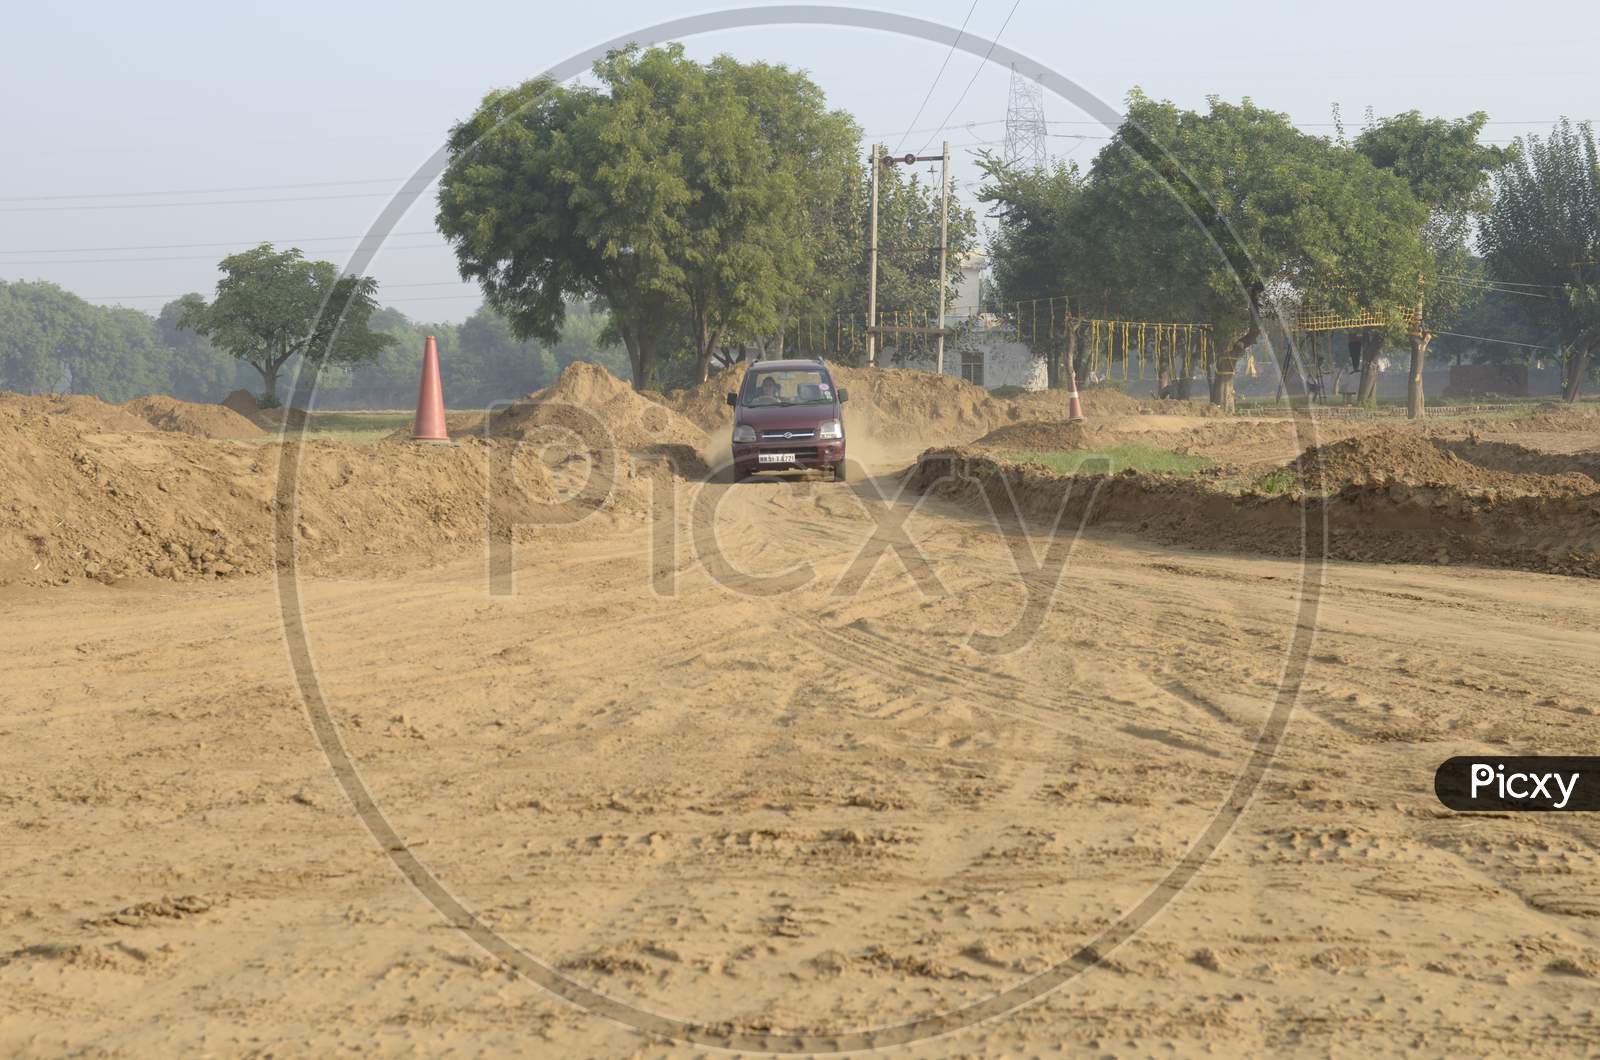 View of A Maruti Suzuki Wagon R Car moving through the dirt